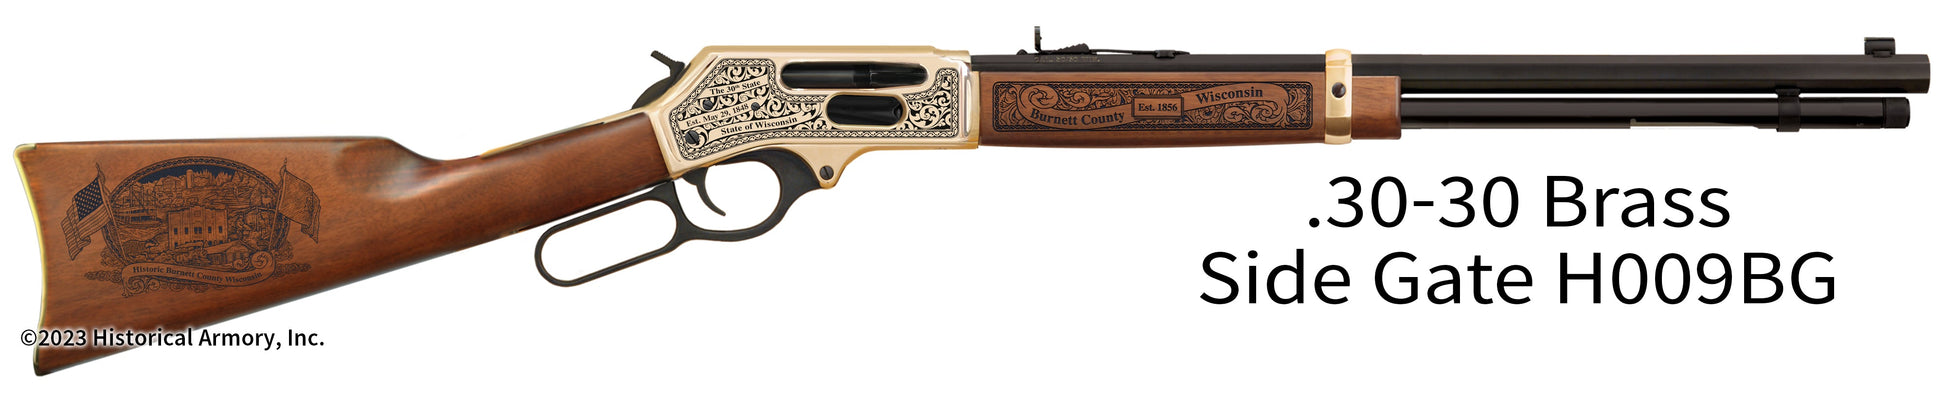 Burnett County Wisconsin Engraved Henry .30-30 Brass Side Gate Rifle